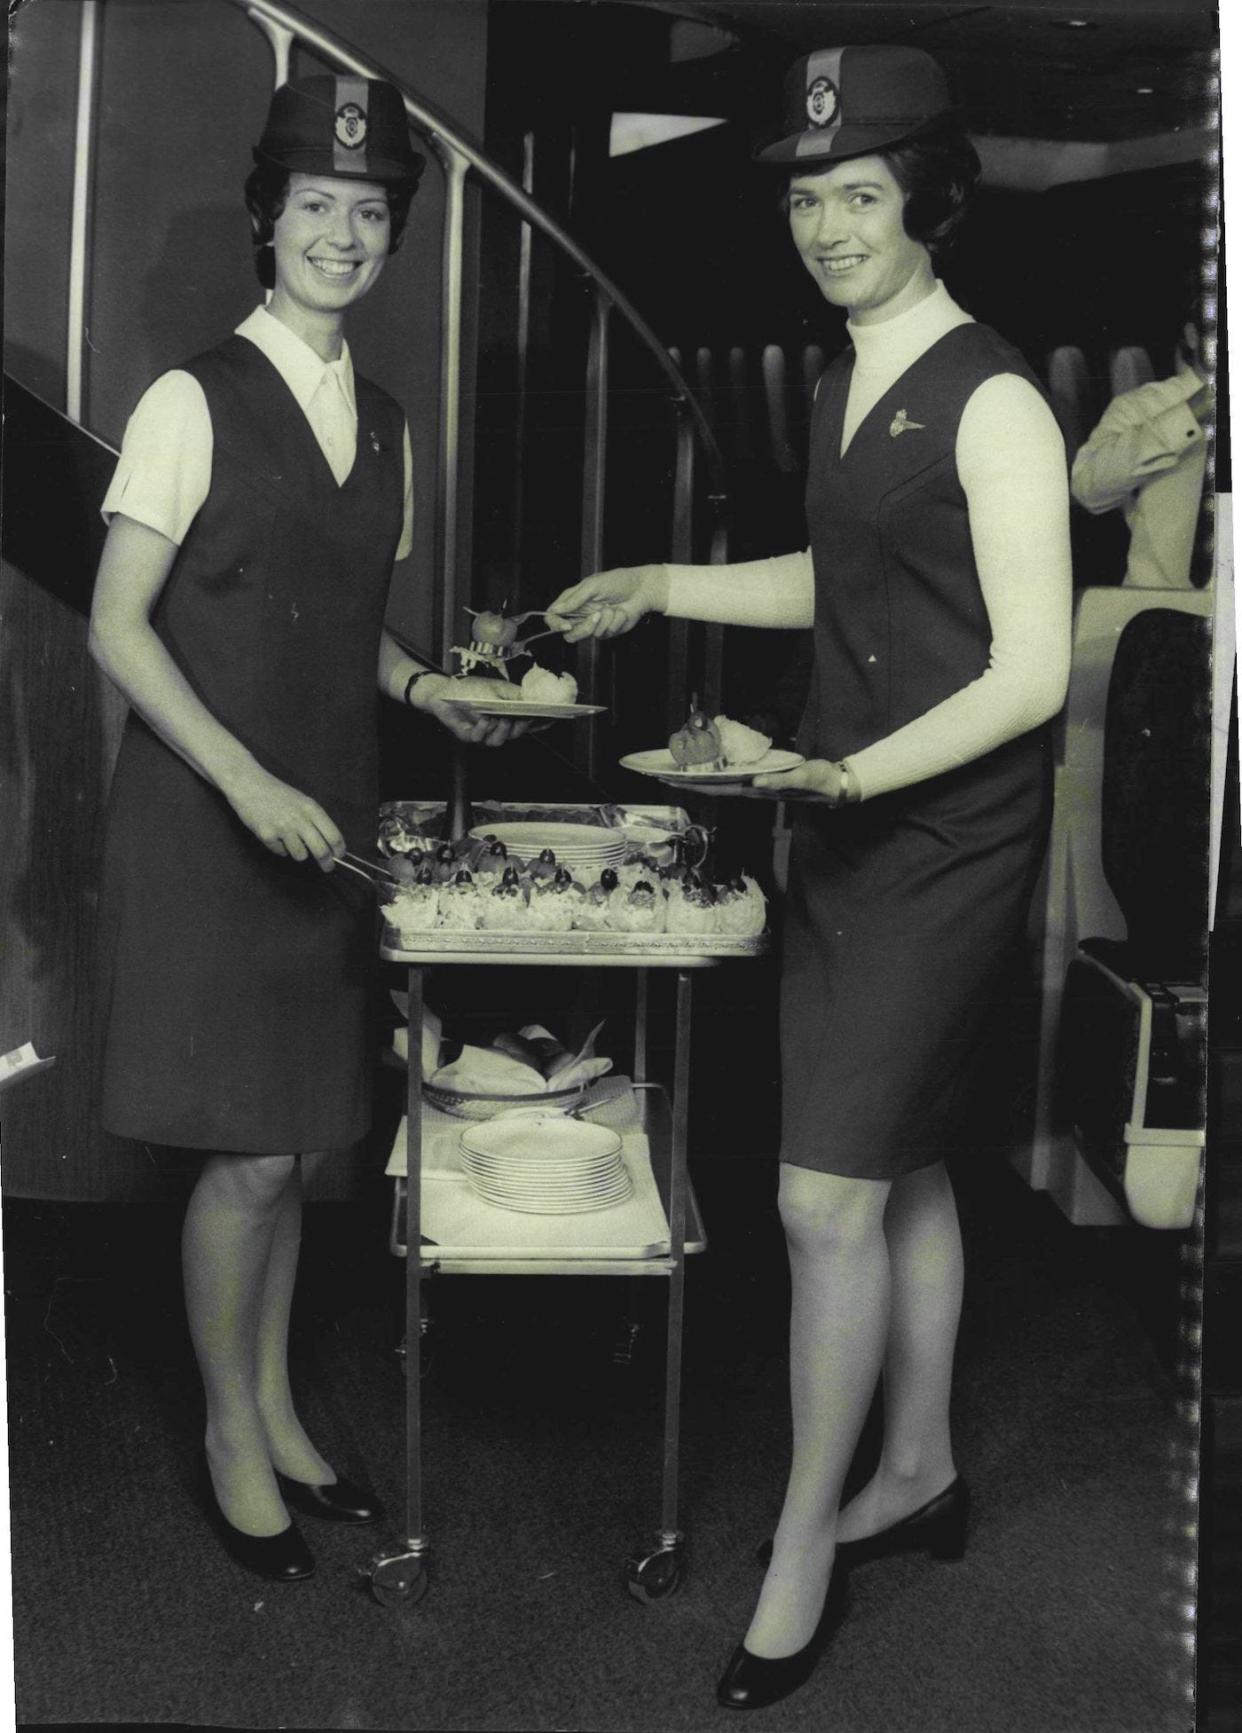 qantas flight attendant uniform 2